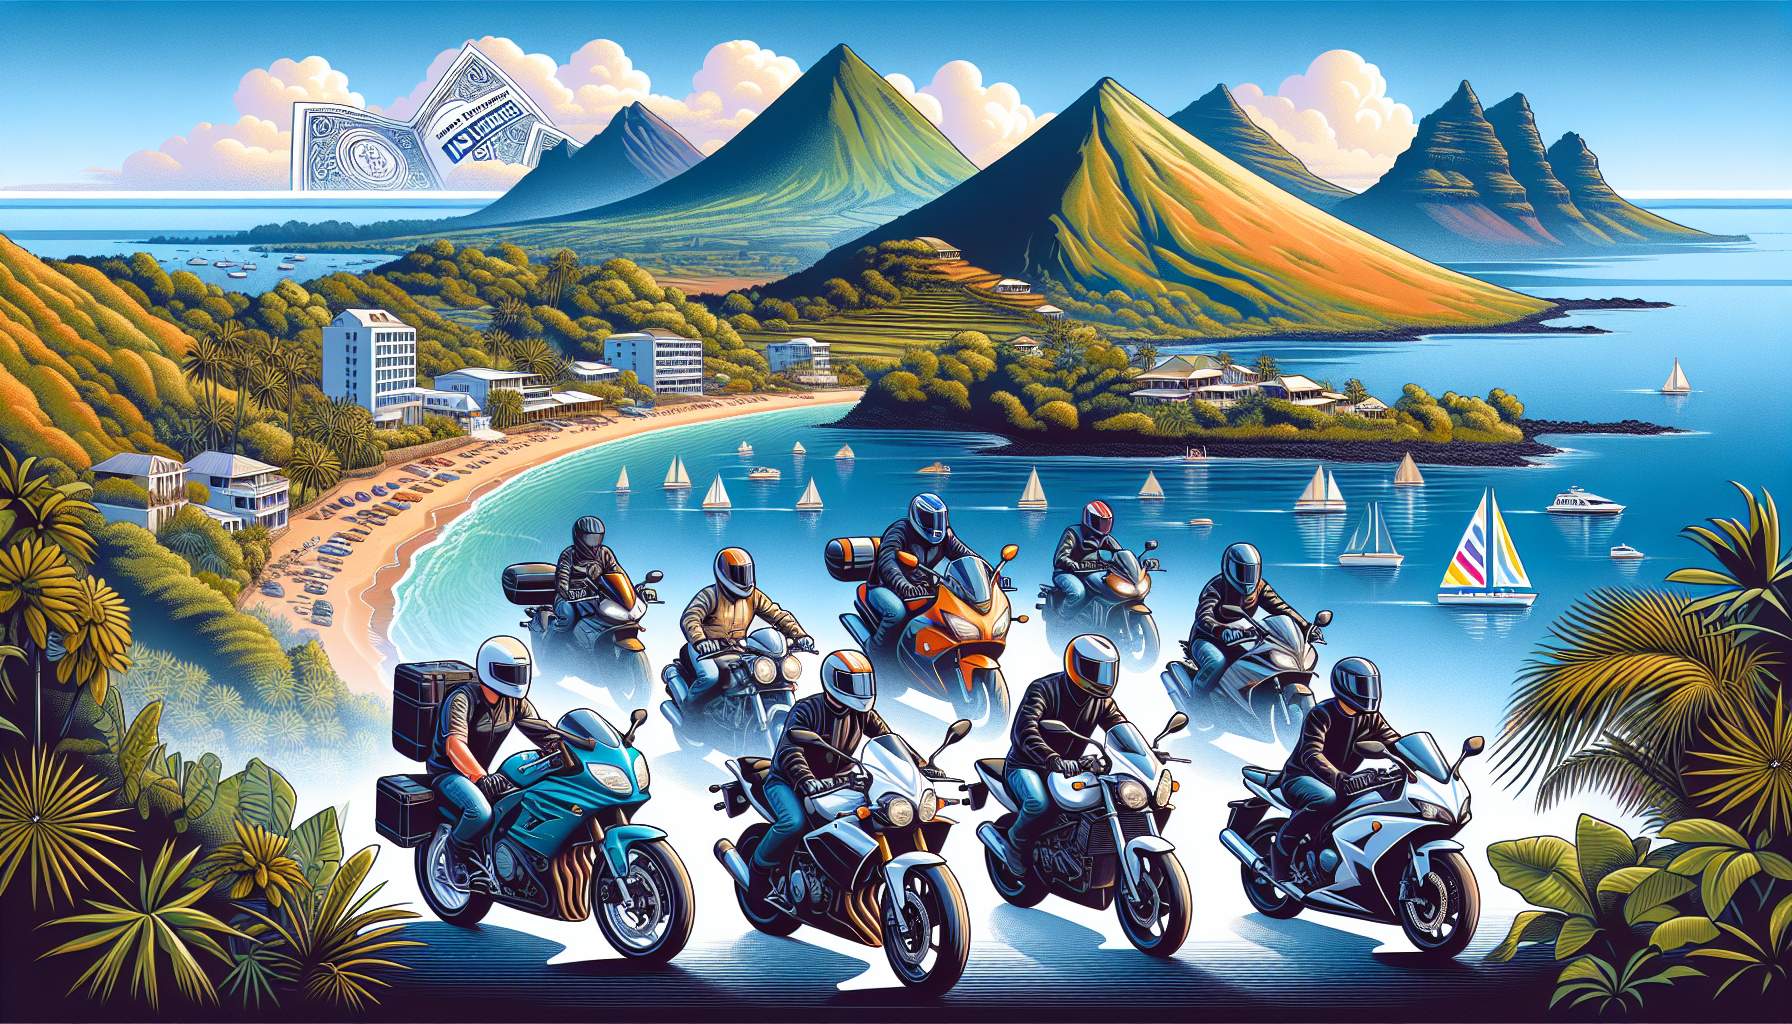 découvrez les avantages de souscrire une assurance moto à la réunion et protégez-vous sur les routes de l'île avec notre assurance moto adaptée à vos besoins.